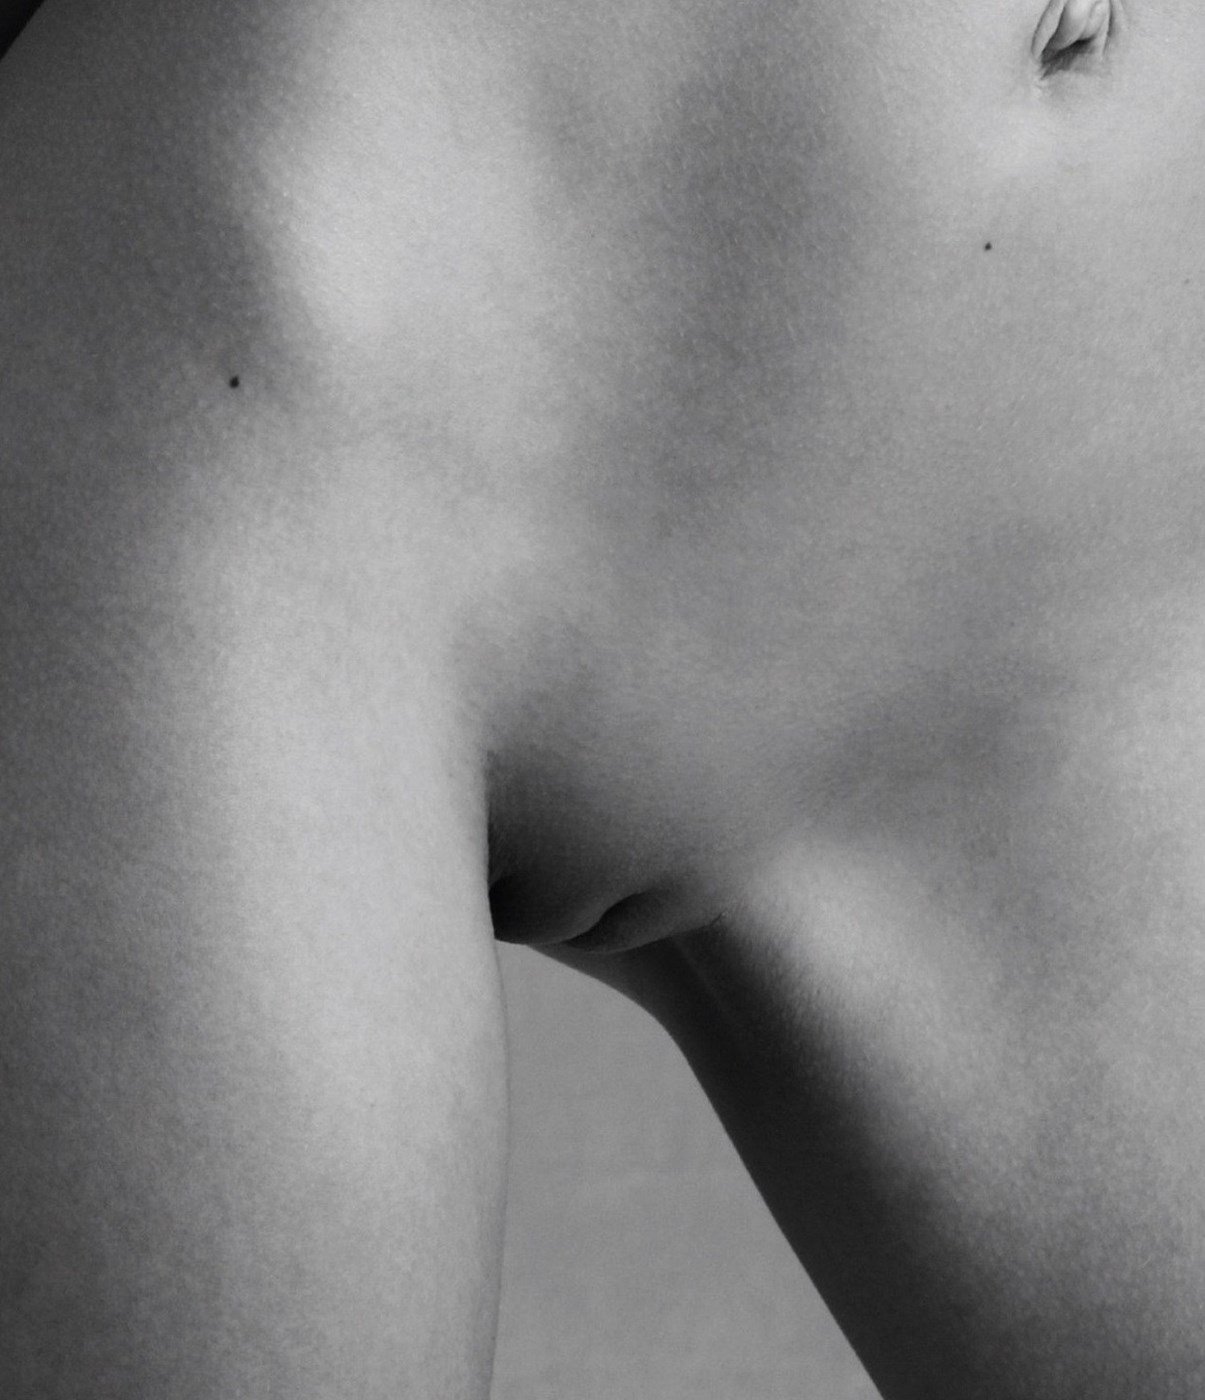 Emily Ratajkowski Magazine Cover nude photos